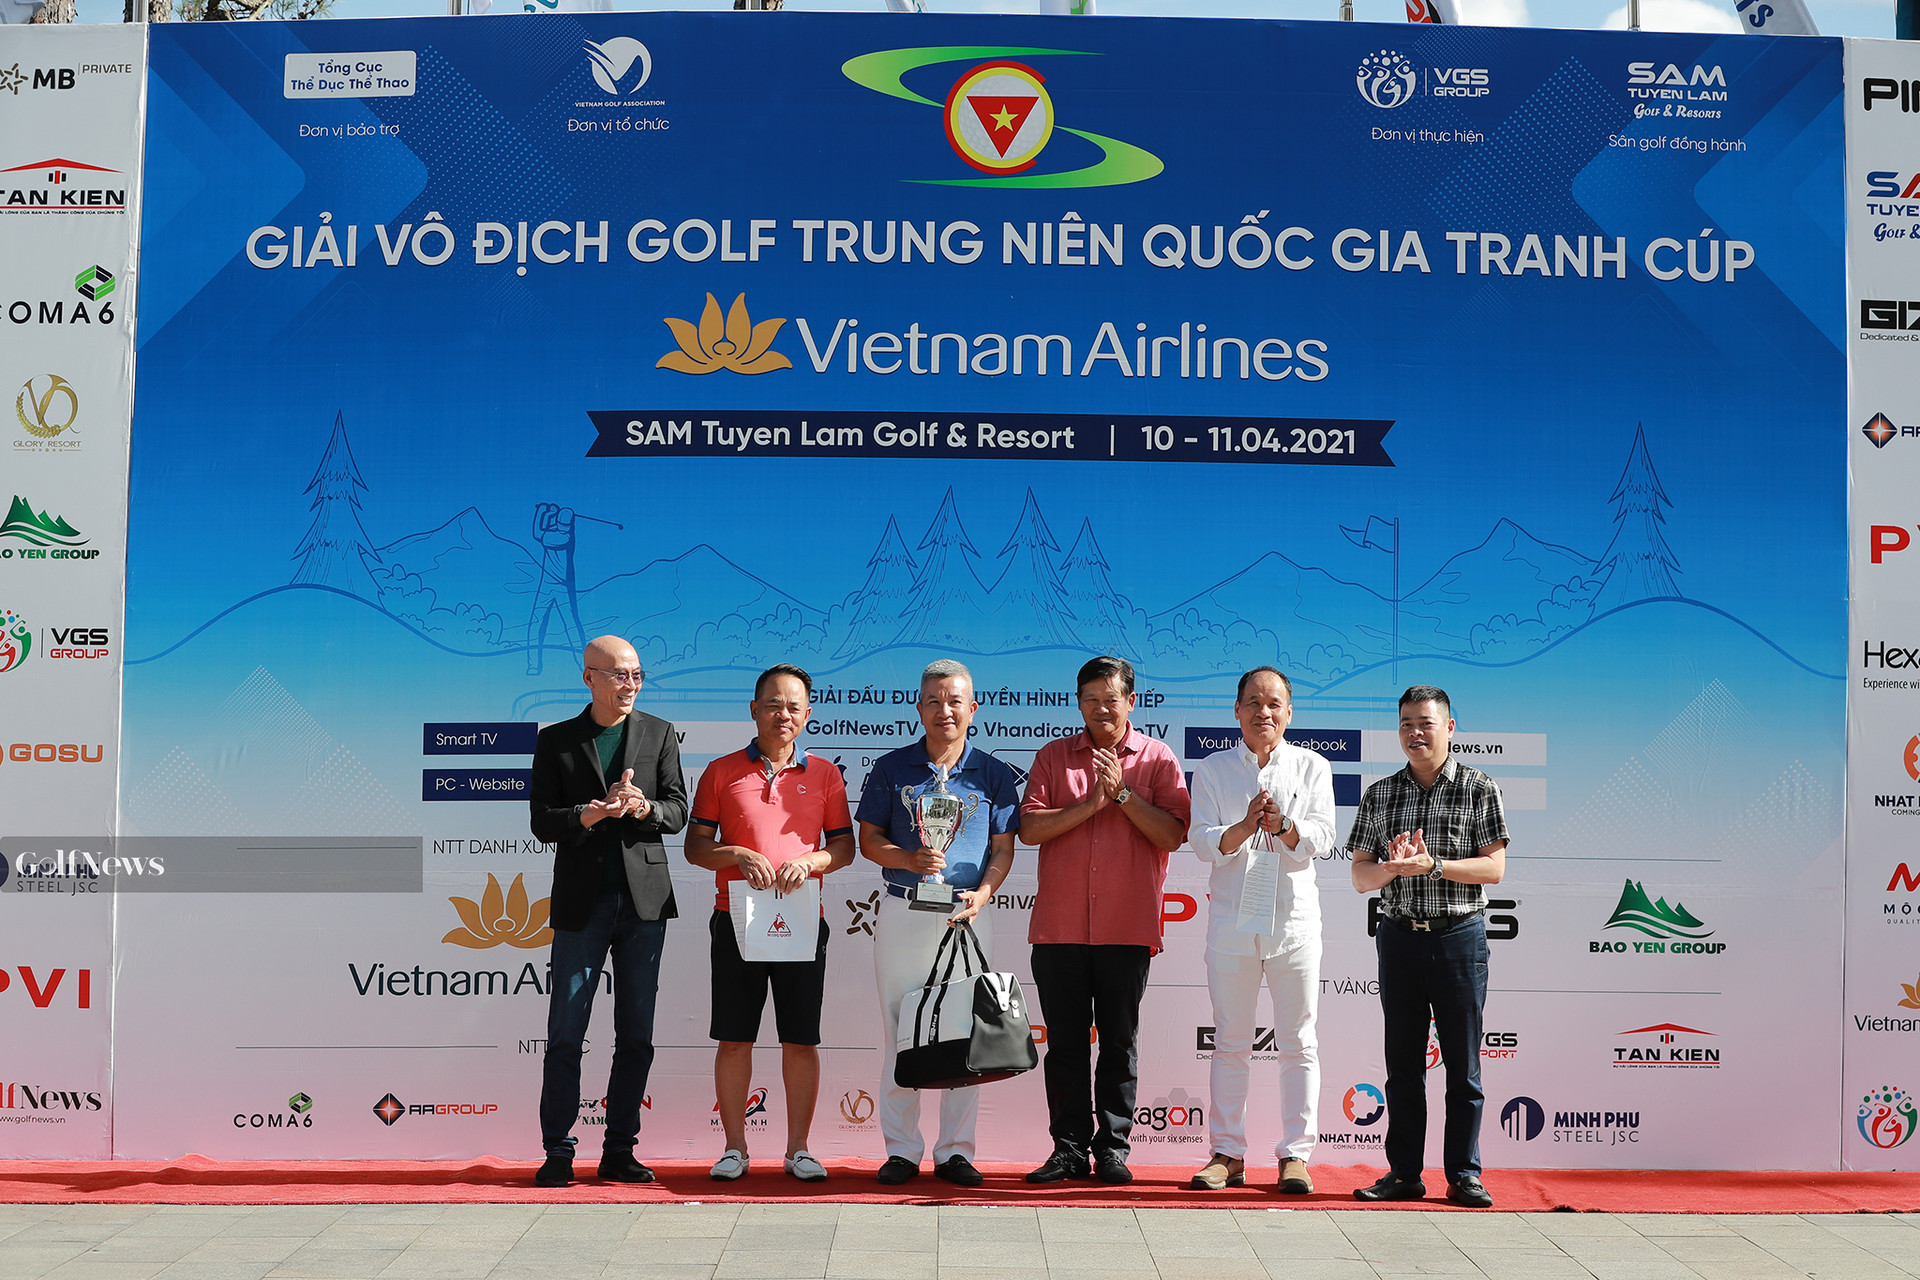 Kết quả chung cuộc giải Vô địch golf Trung niên Quốc gia tranh cúp Vietnam Airlines - Ảnh 2.